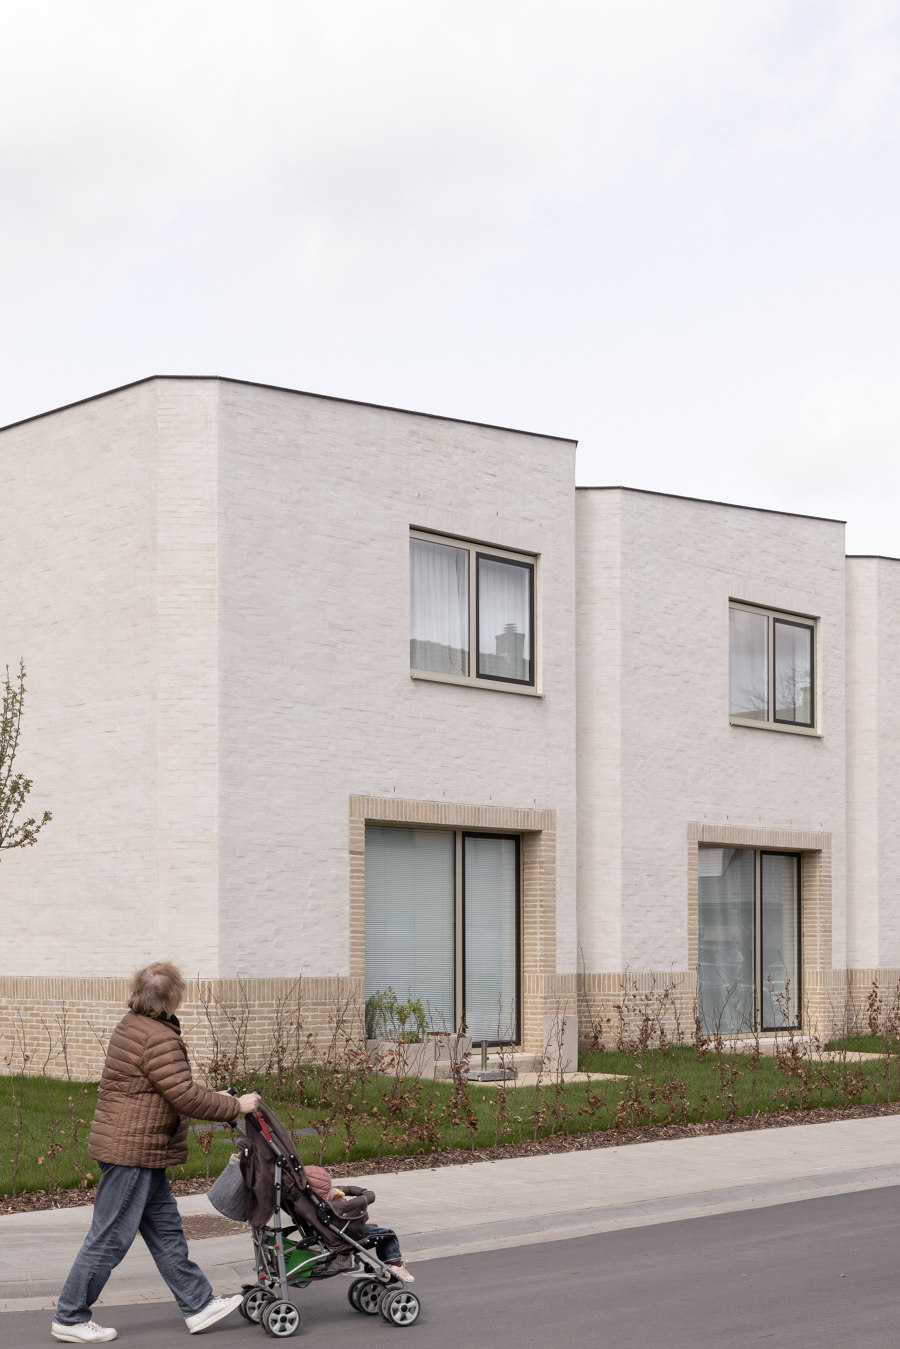 Ten Boomgaard Housing de WE-S architecten | Urbanizaciones